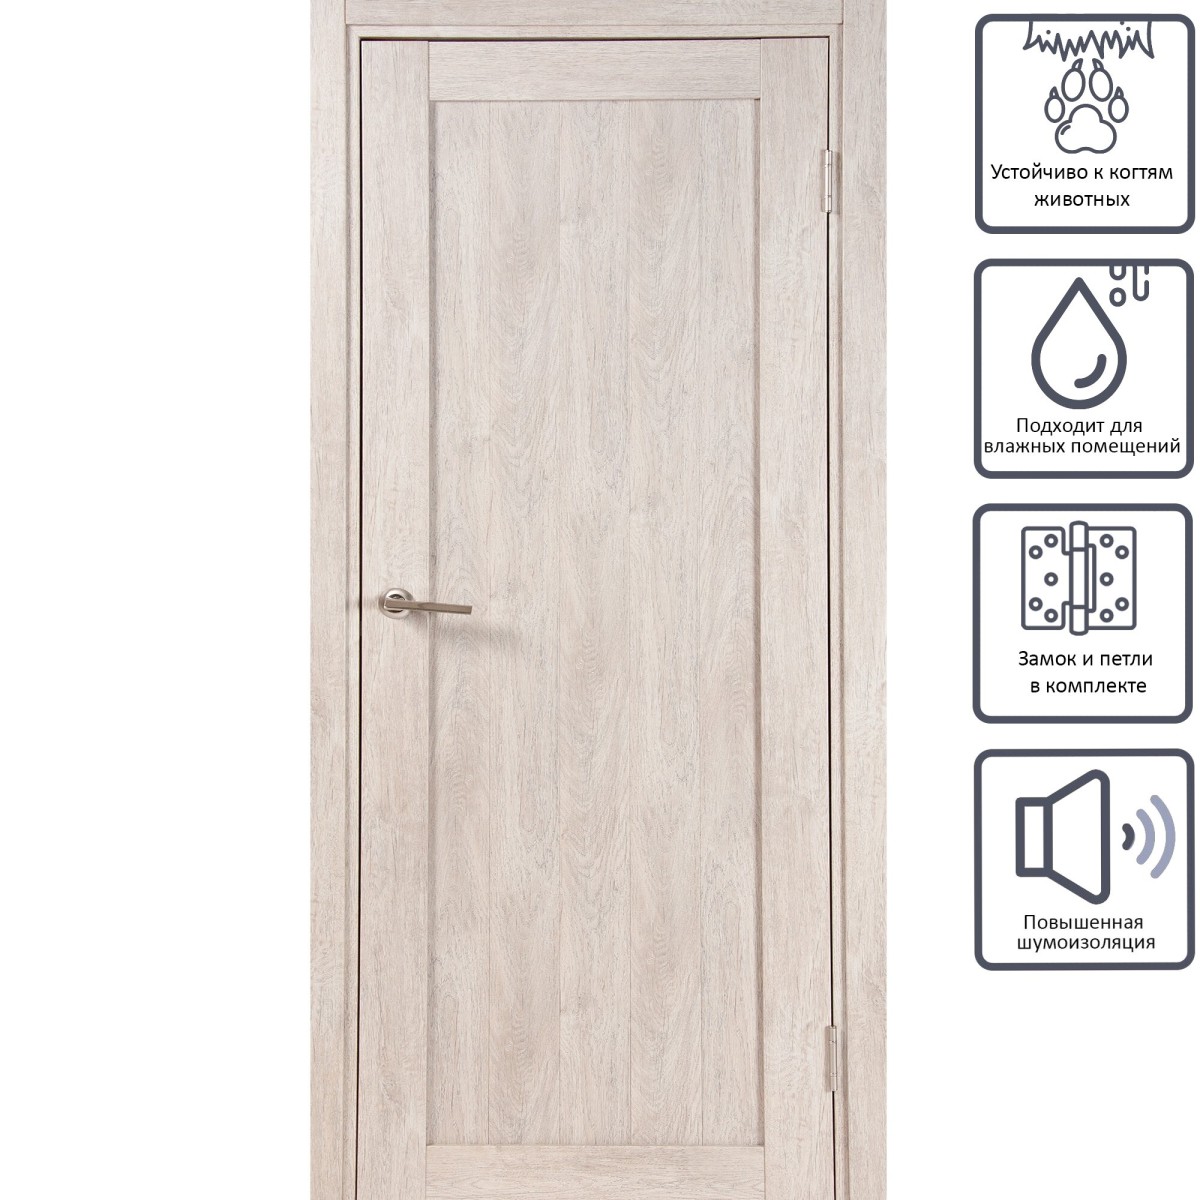 Дверь межкомнатная глухая Кантри 90x200 см, ПВХ, цвет дуб эссо, с фурнитурой